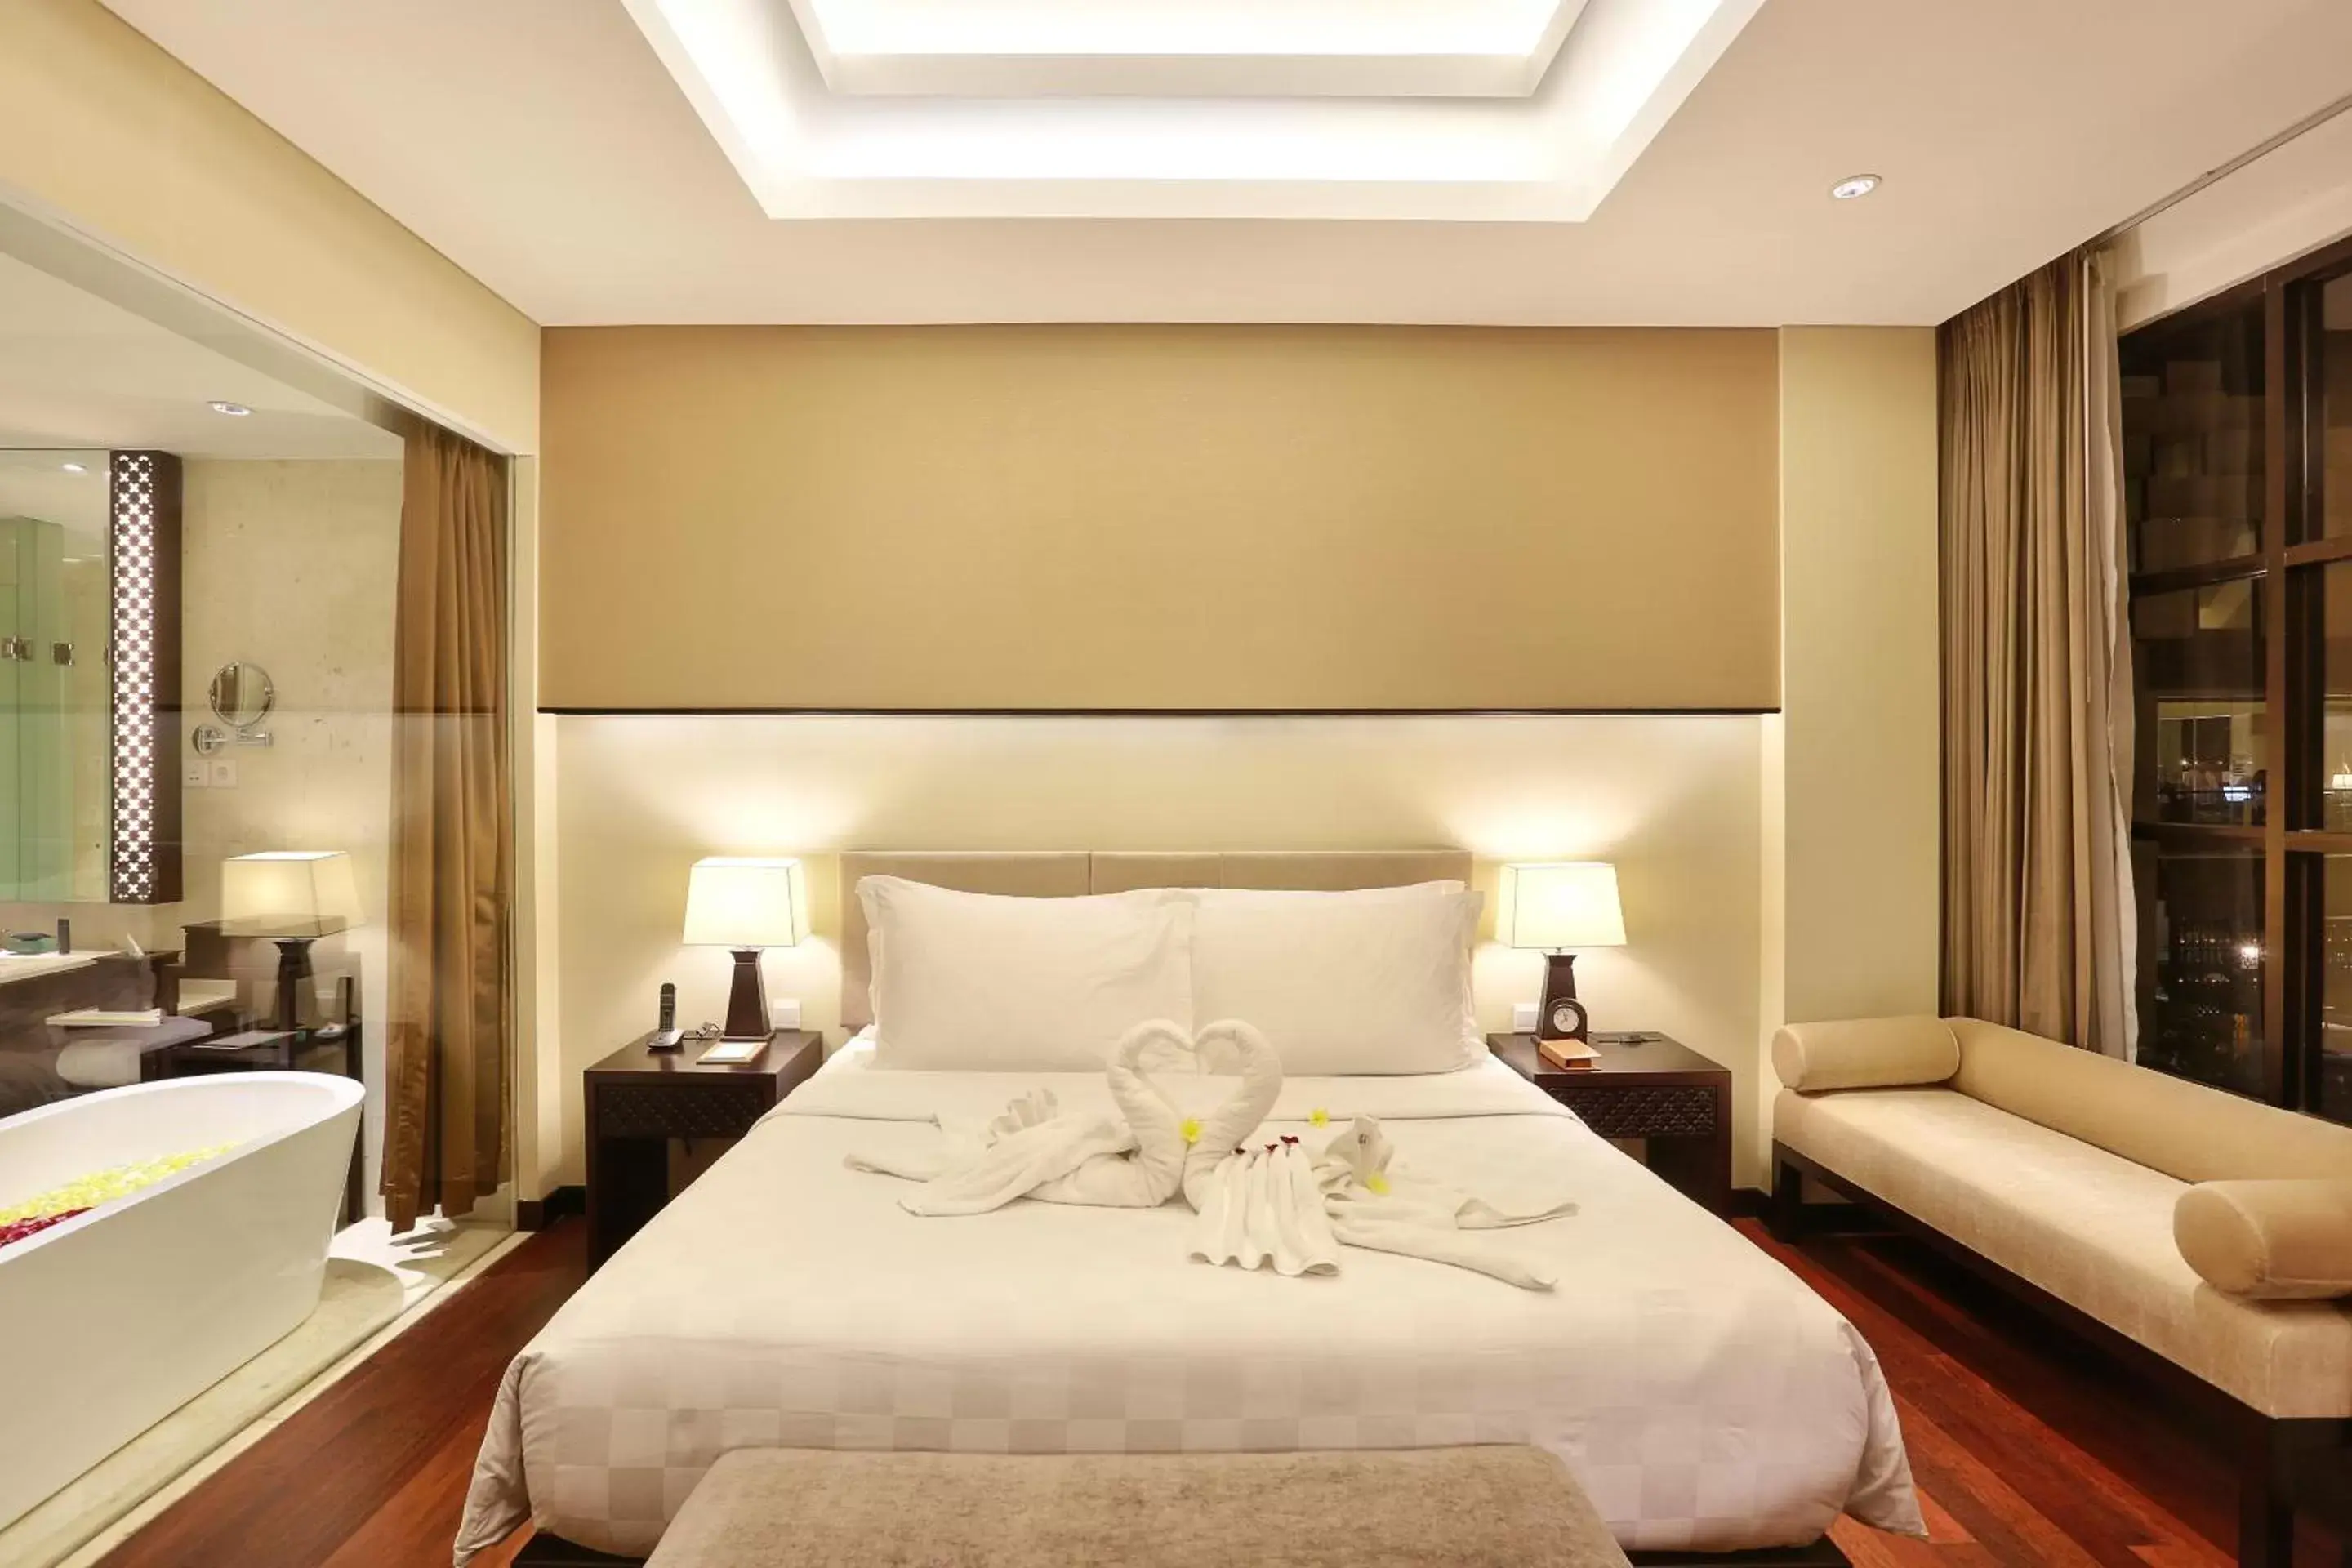 Decorative detail, Bed in Bali Nusa Dua Hotel